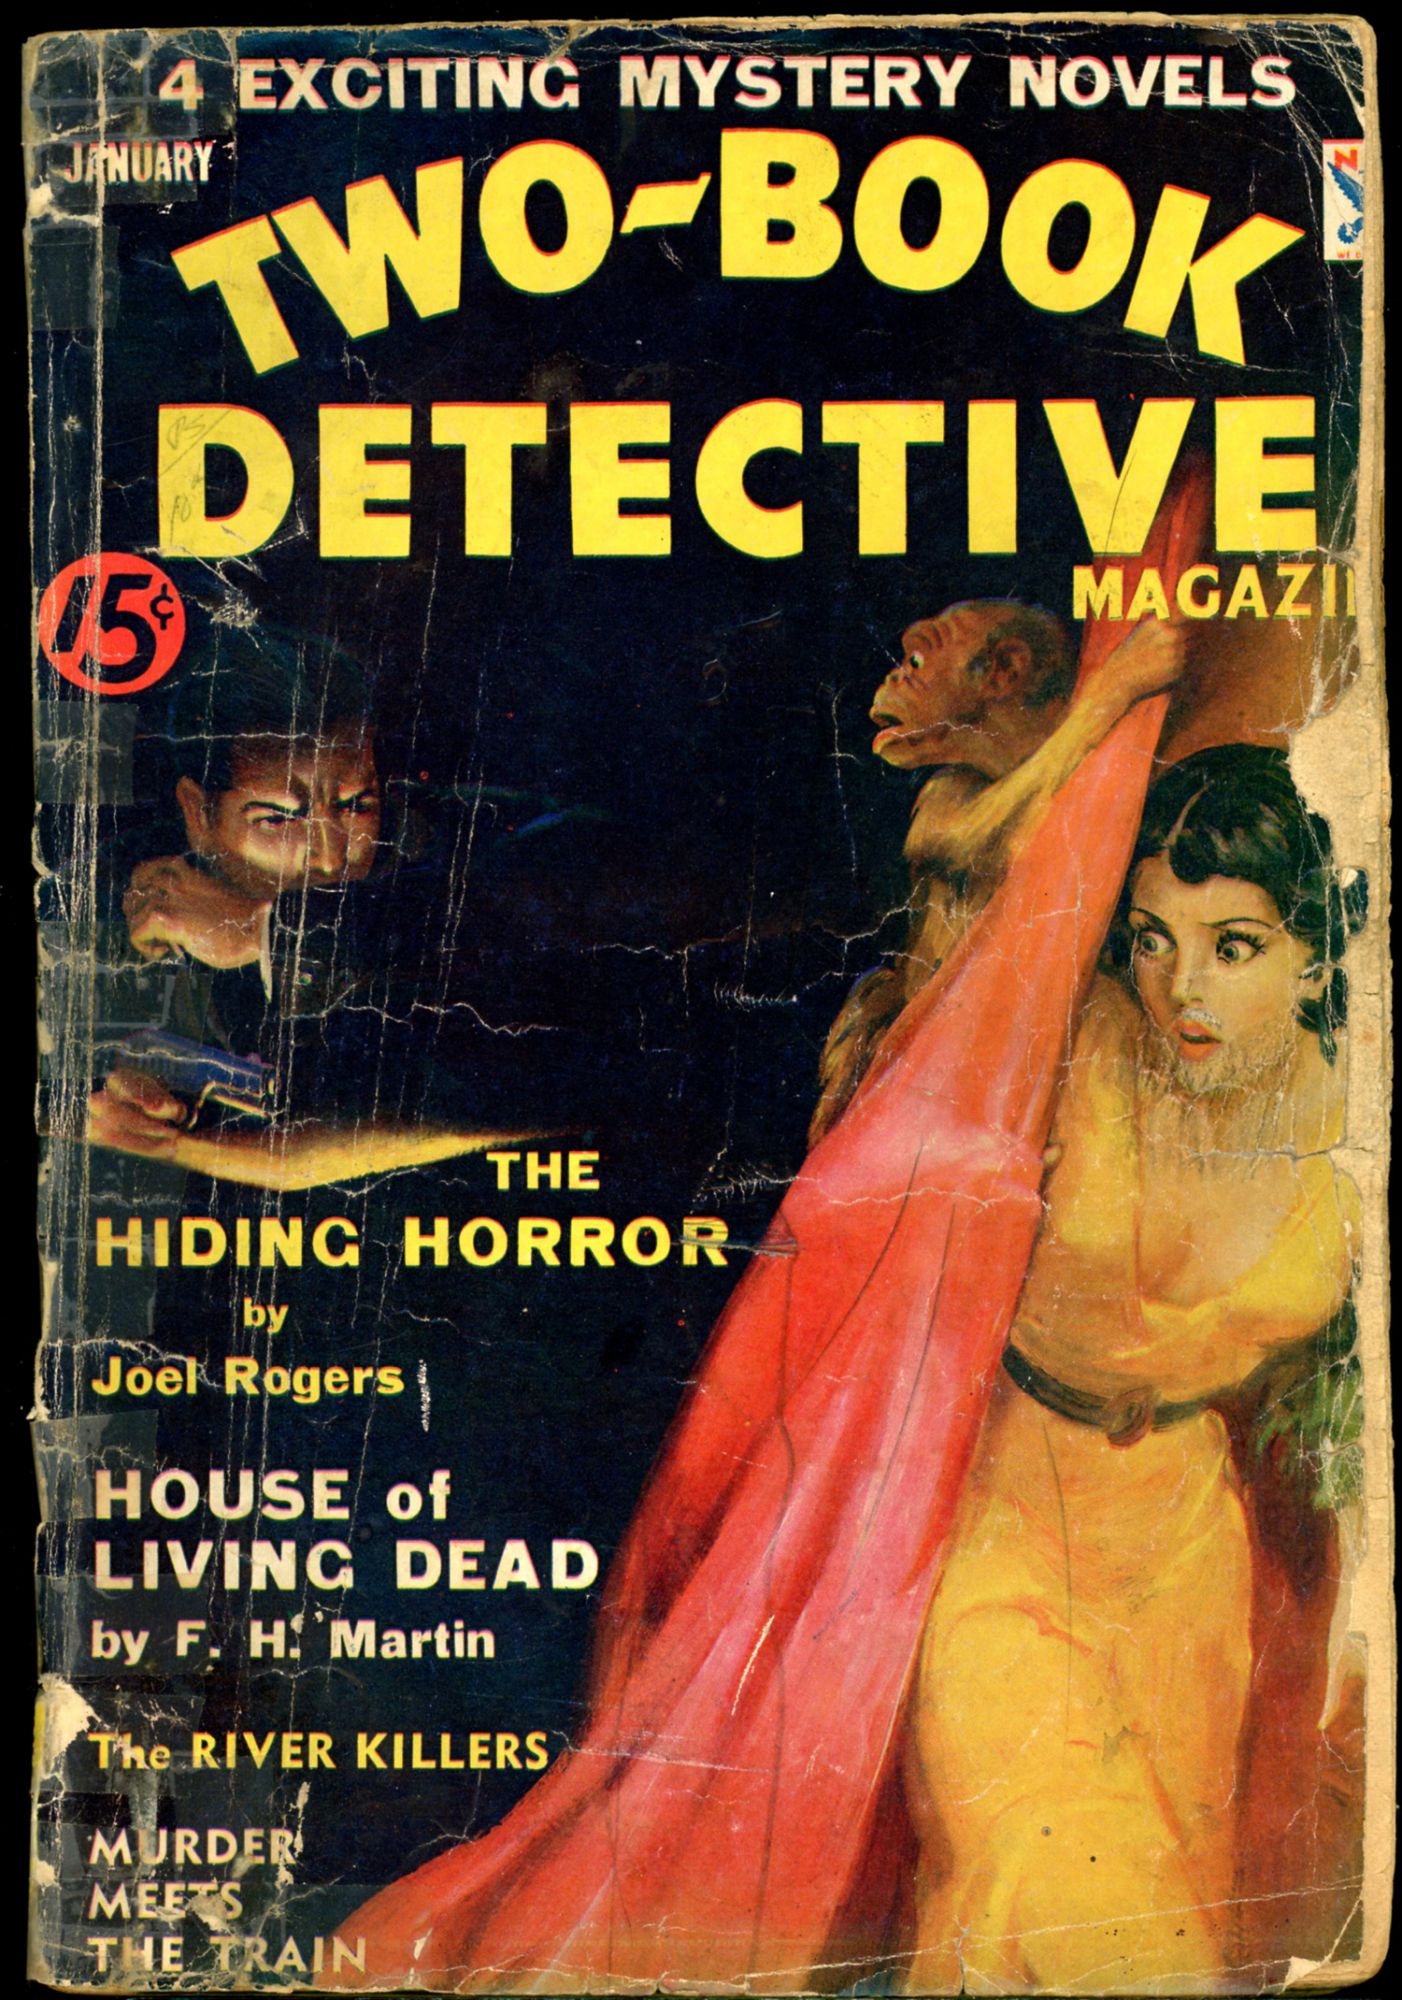 debbie yantis recommends vintage detective magazine covers pic